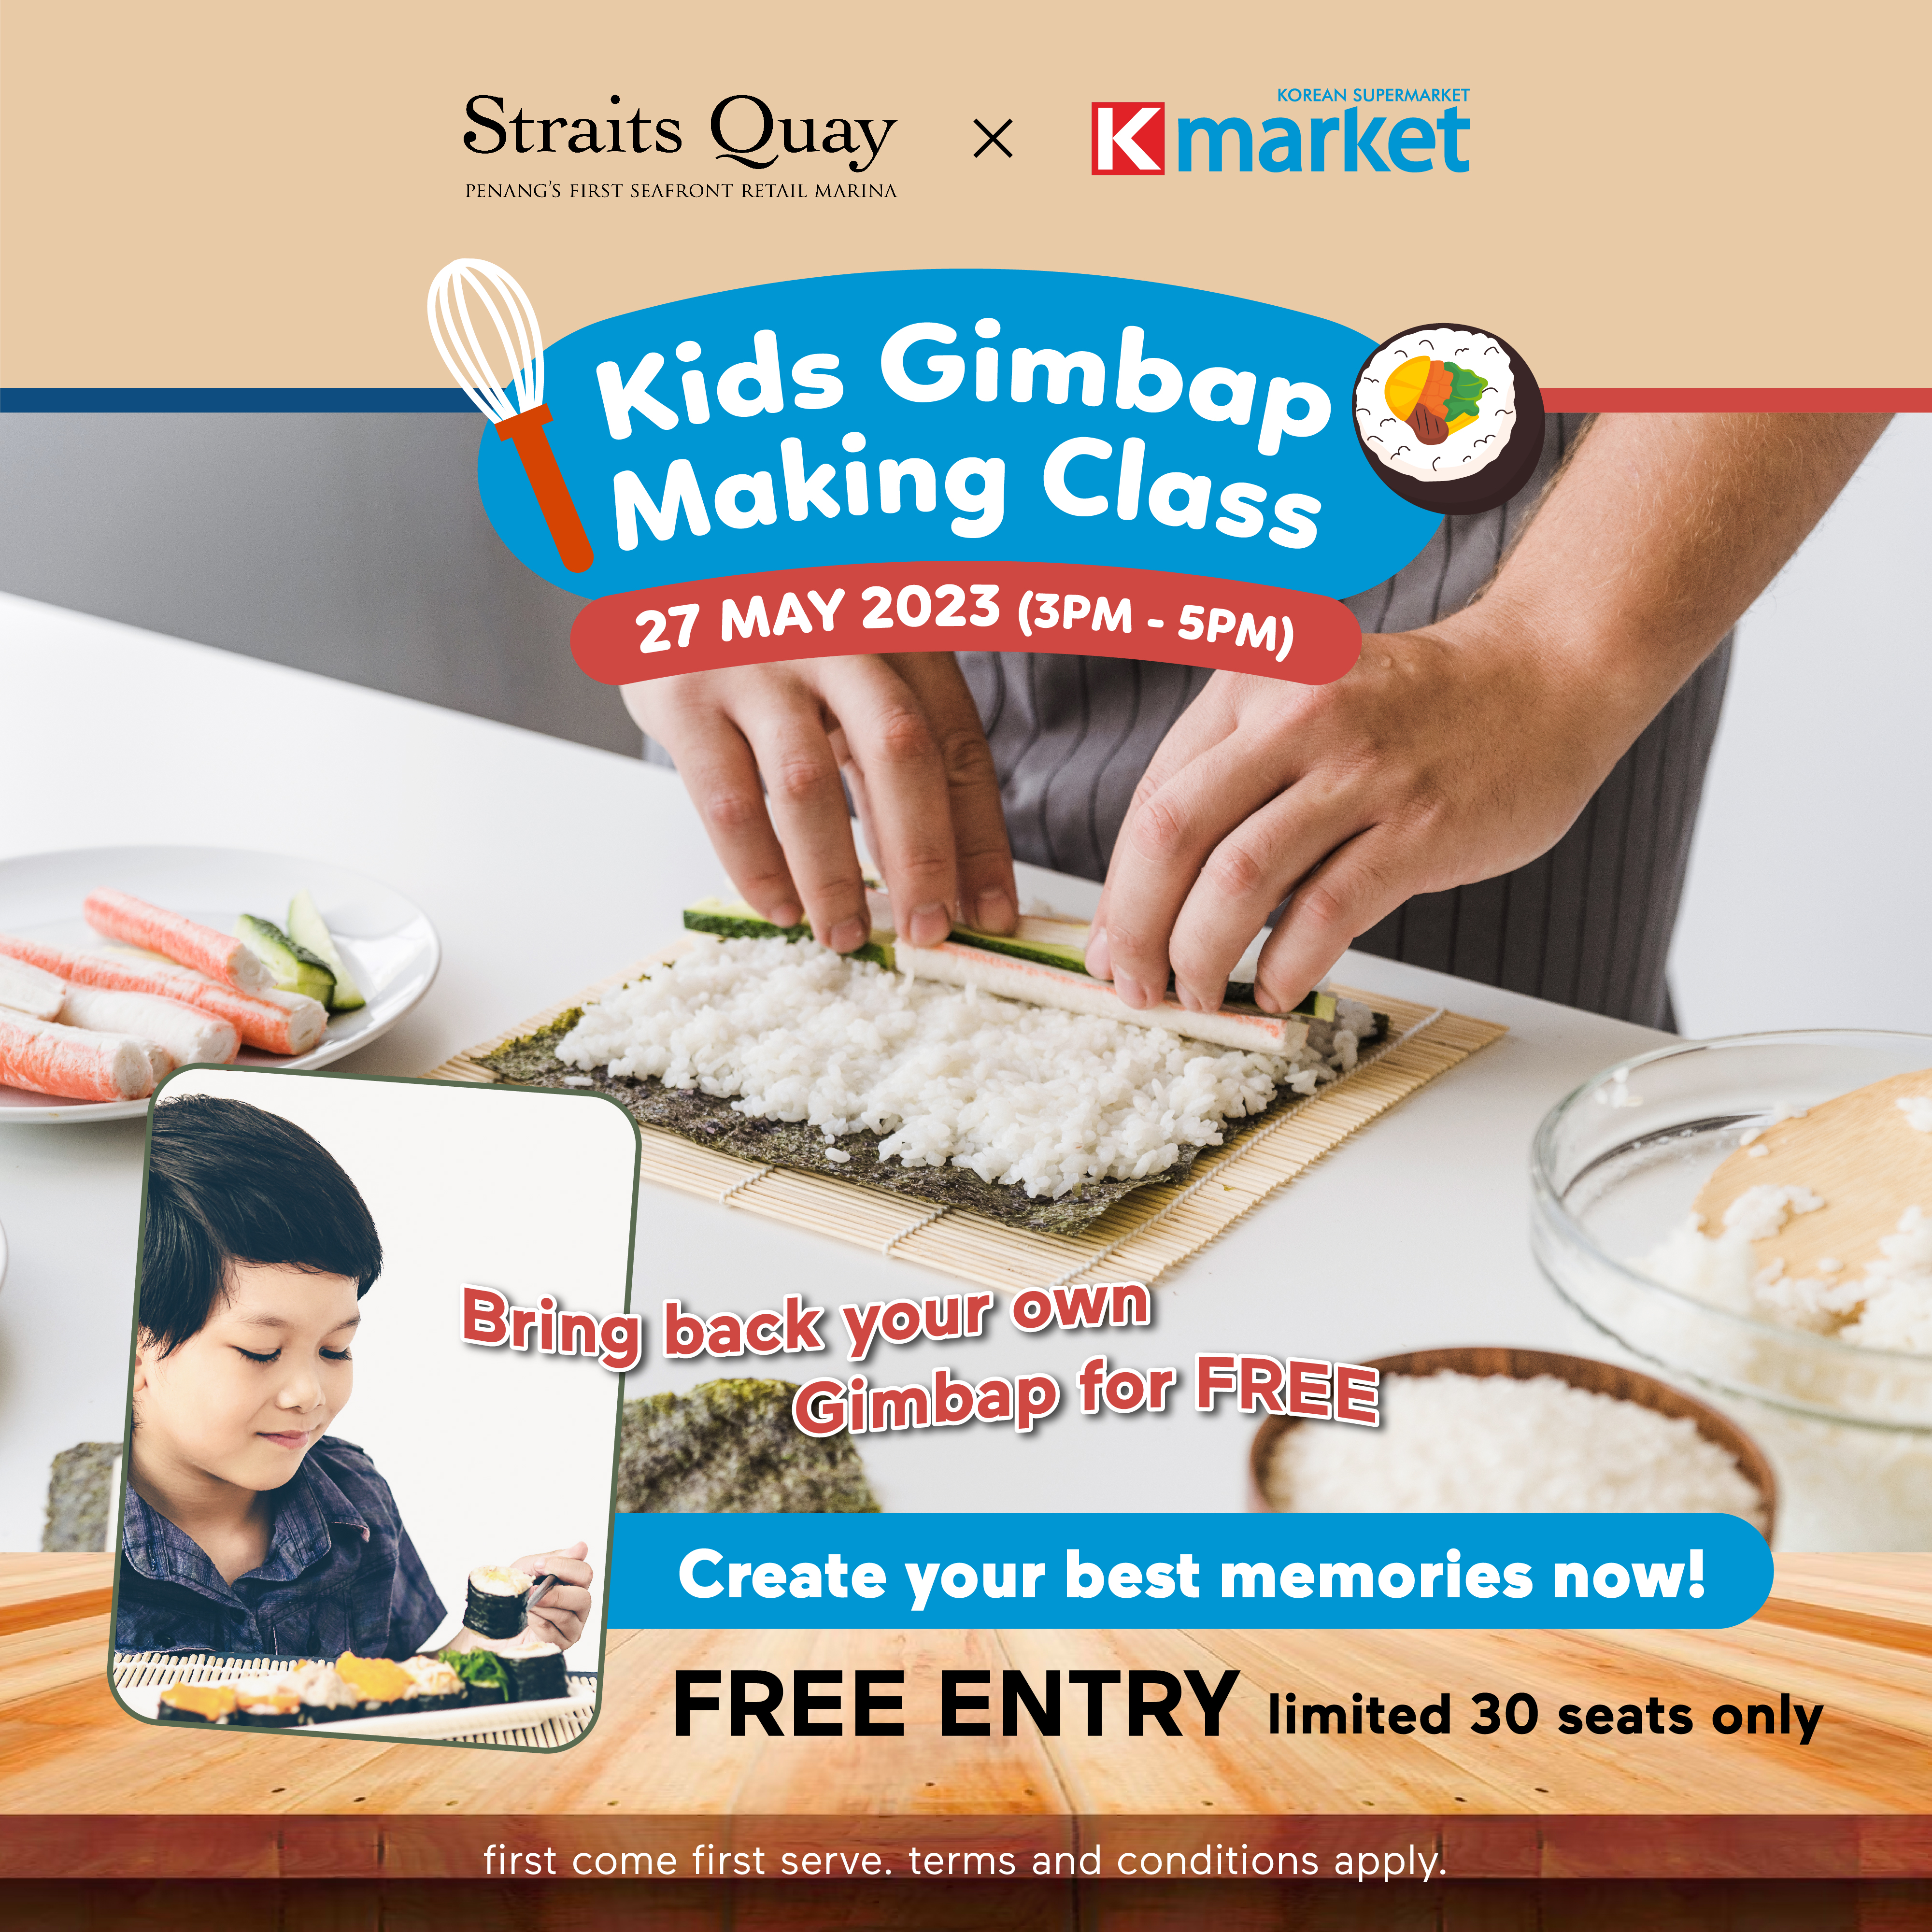 KMarket_Straits Quay_Kids Gimbap making_socialmedia